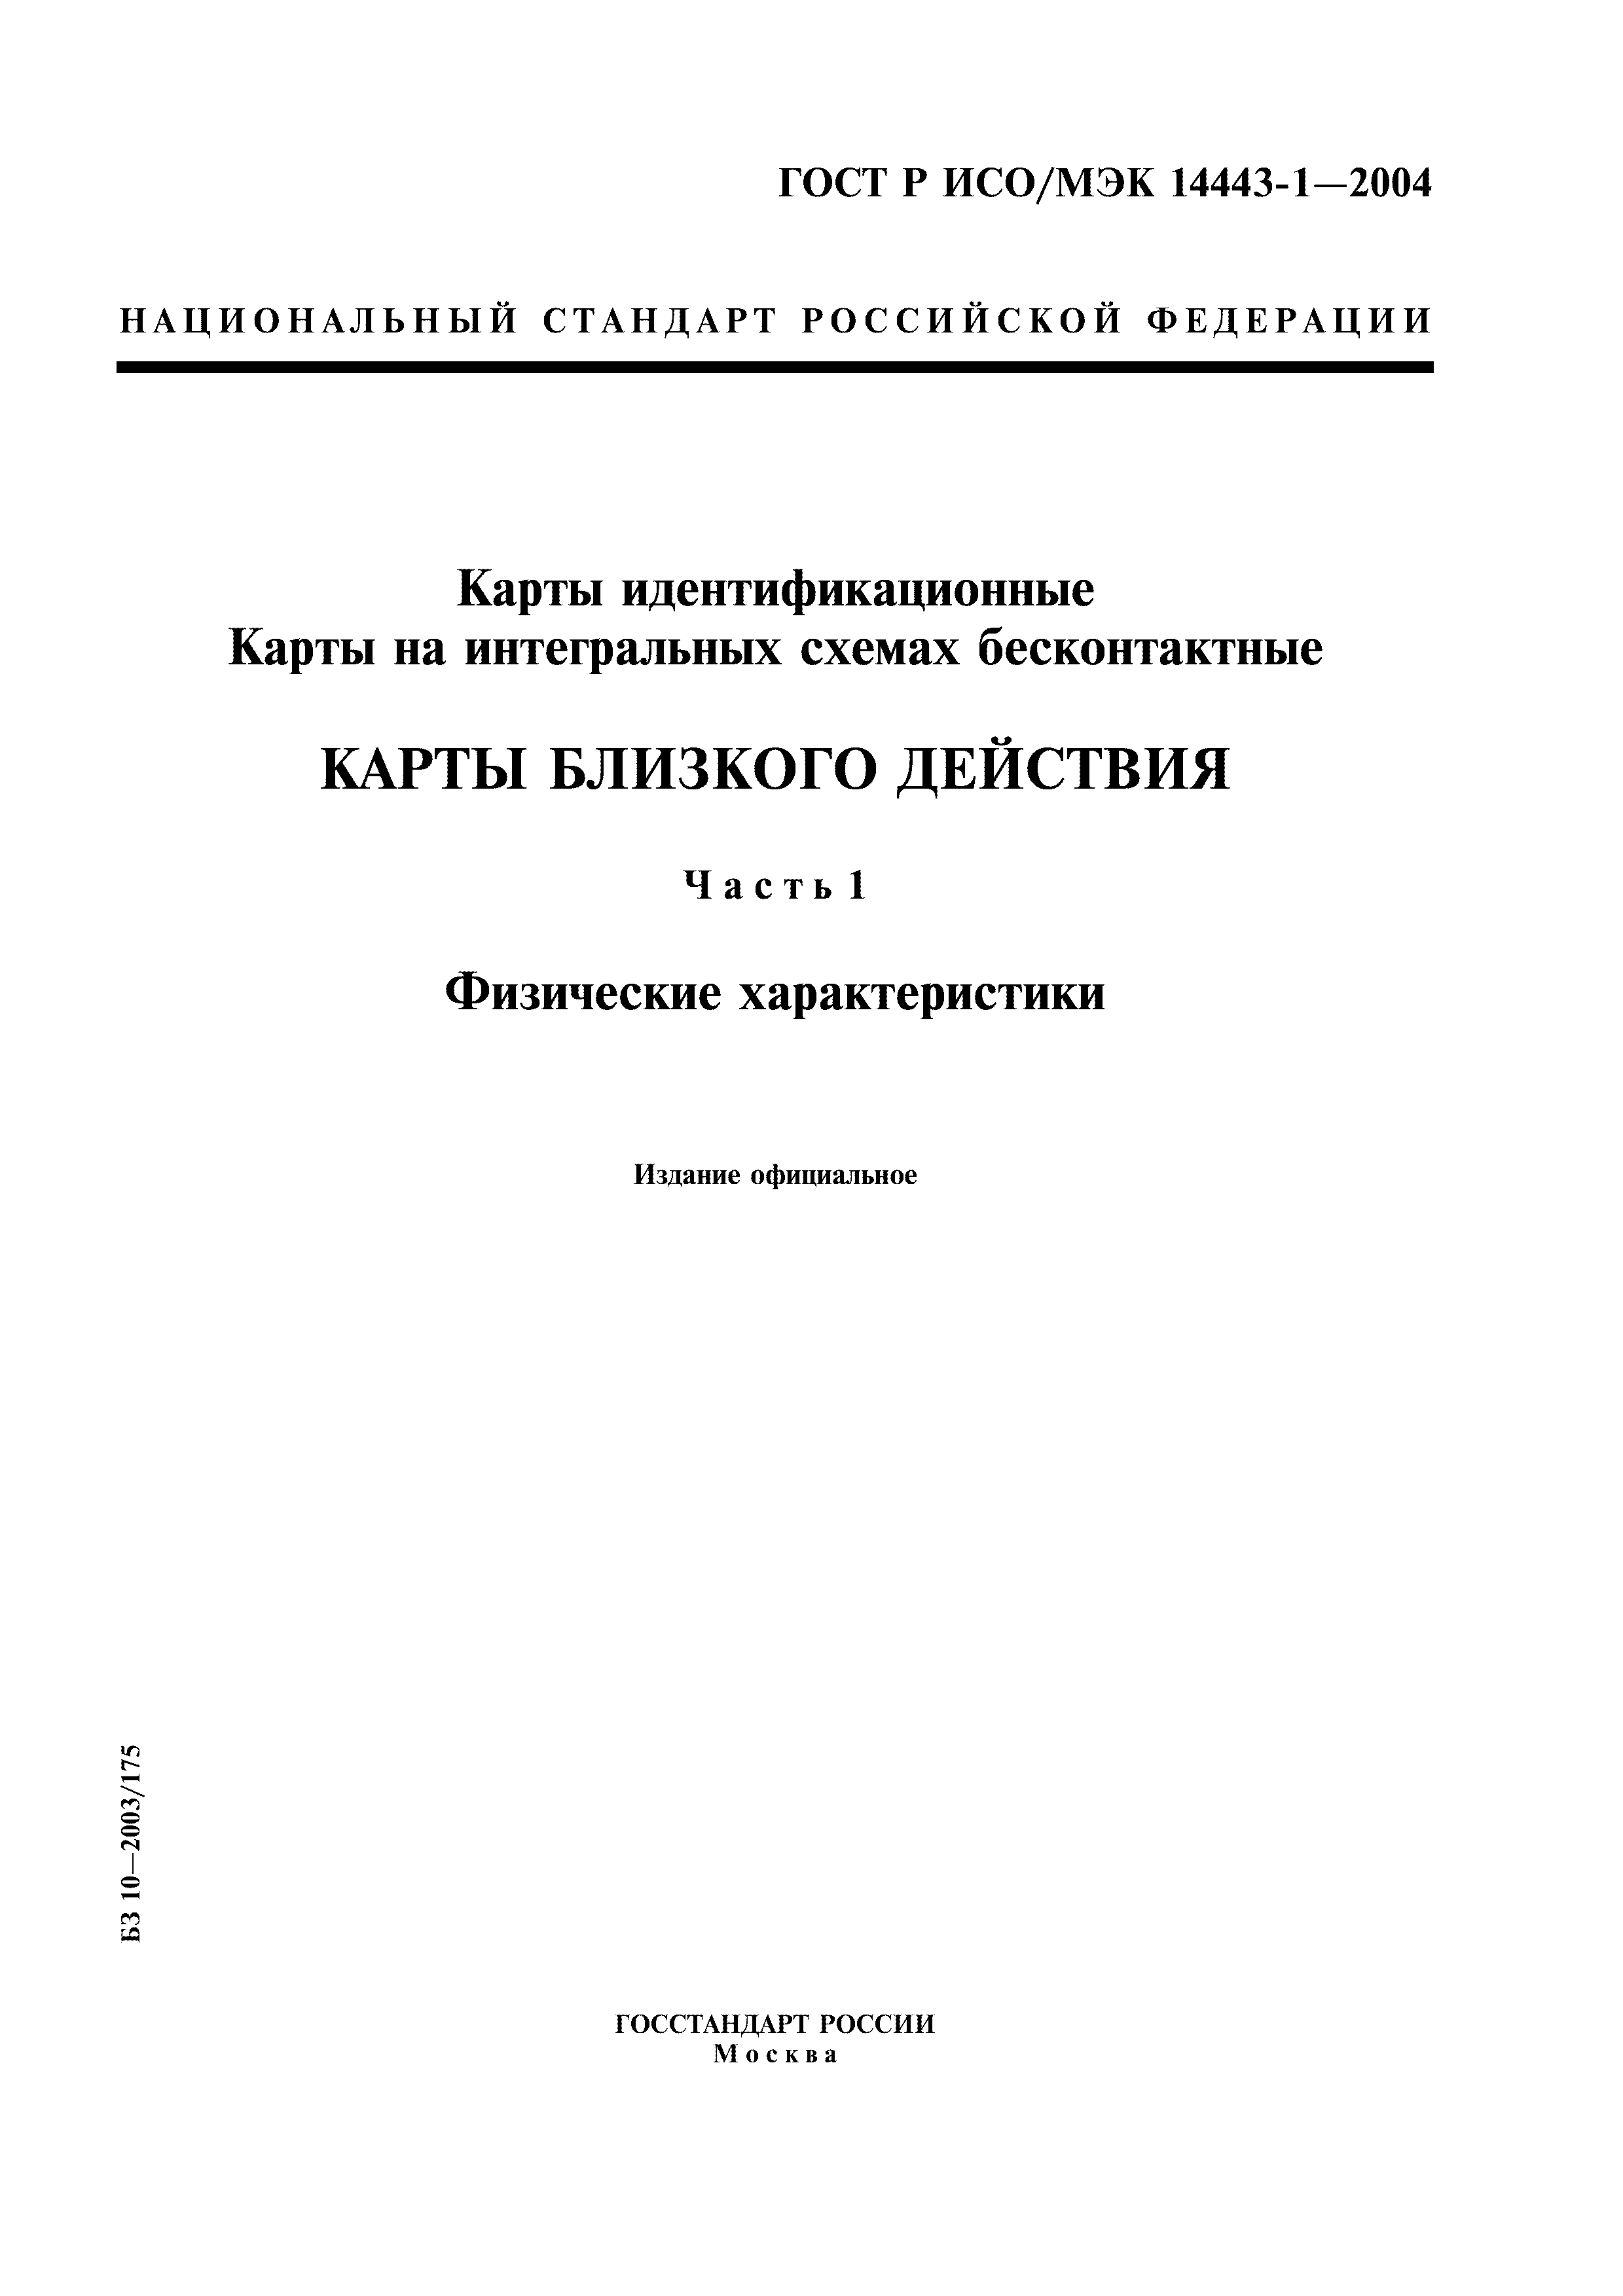 ГОСТ Р ИСО/МЭК 14443-1-2004